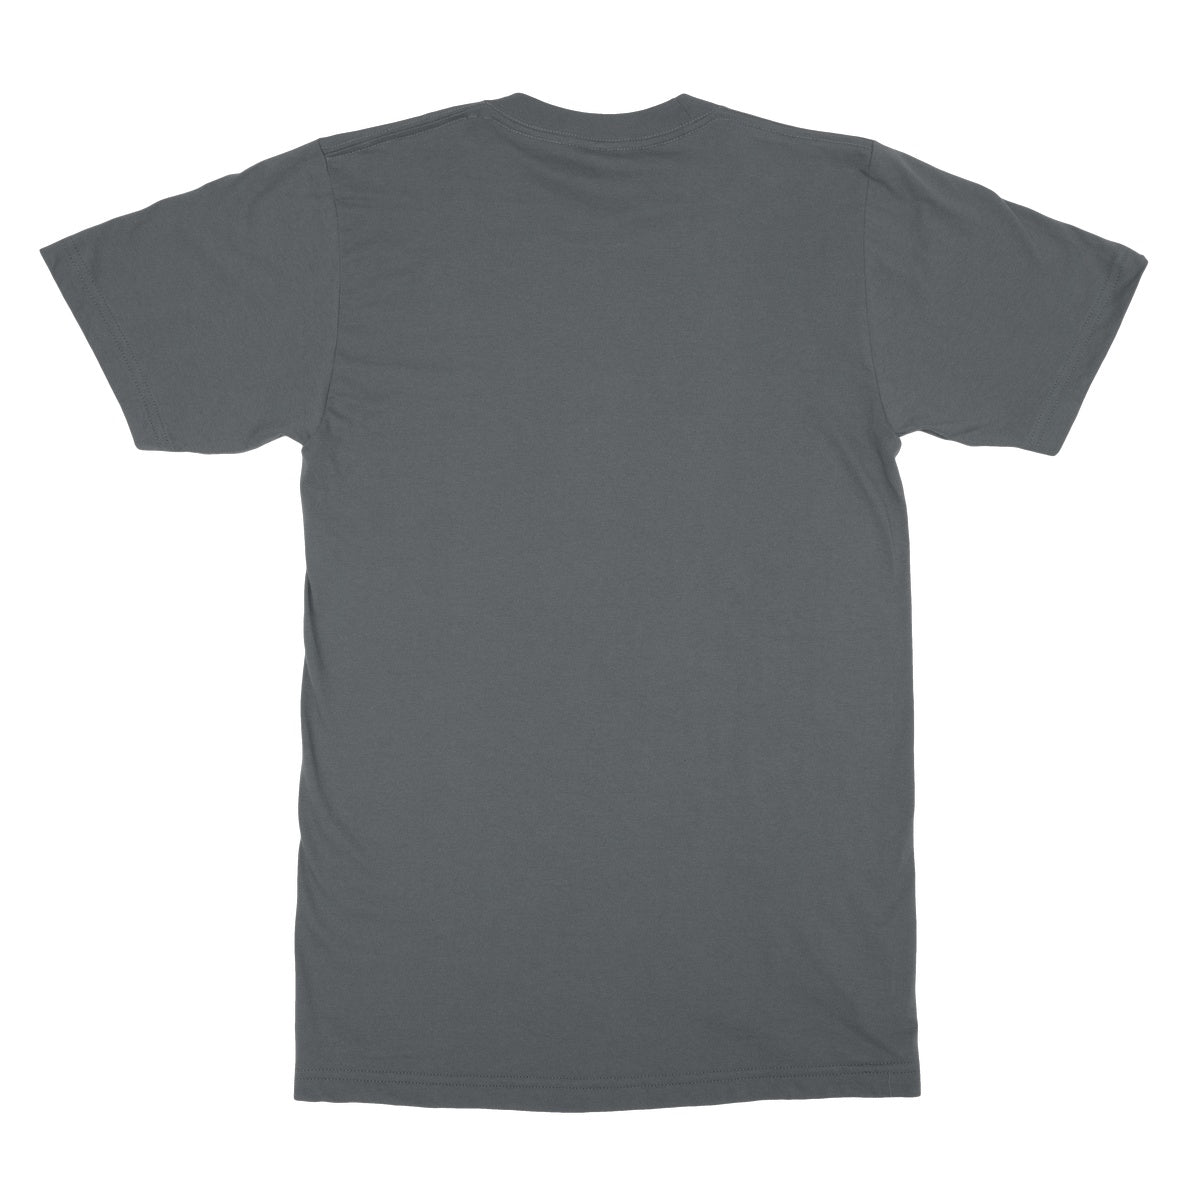 Eat Sleep & Morris Dance T-Shirt